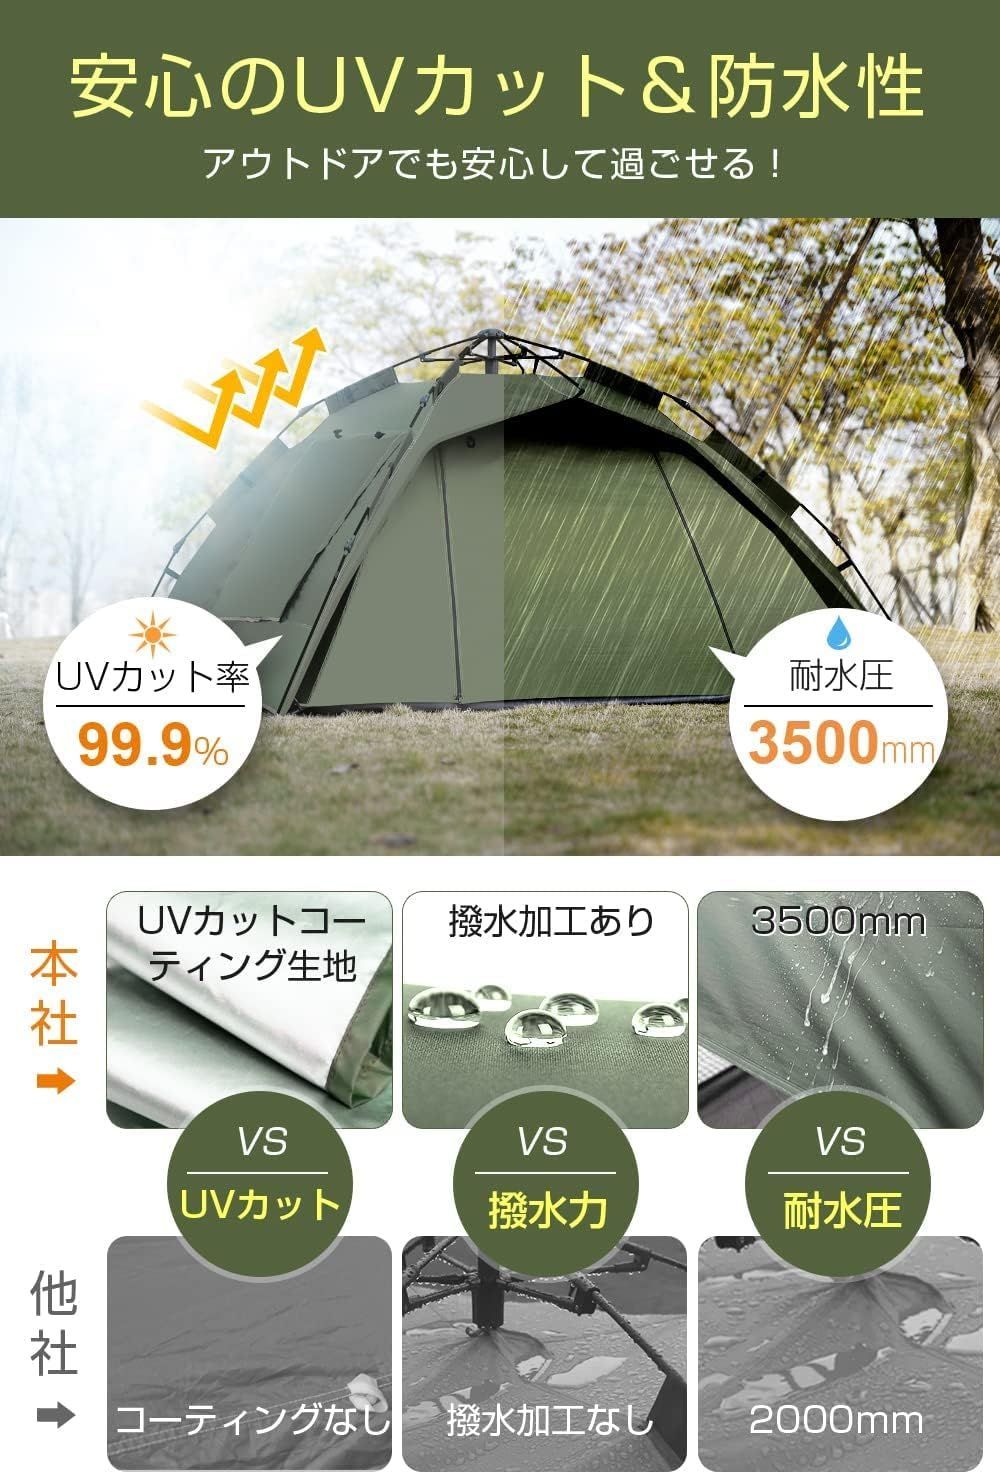 テント ワンタッチ キャンプ 2-4人用 3WAY 耐水圧 防水撥水 ダブルドア